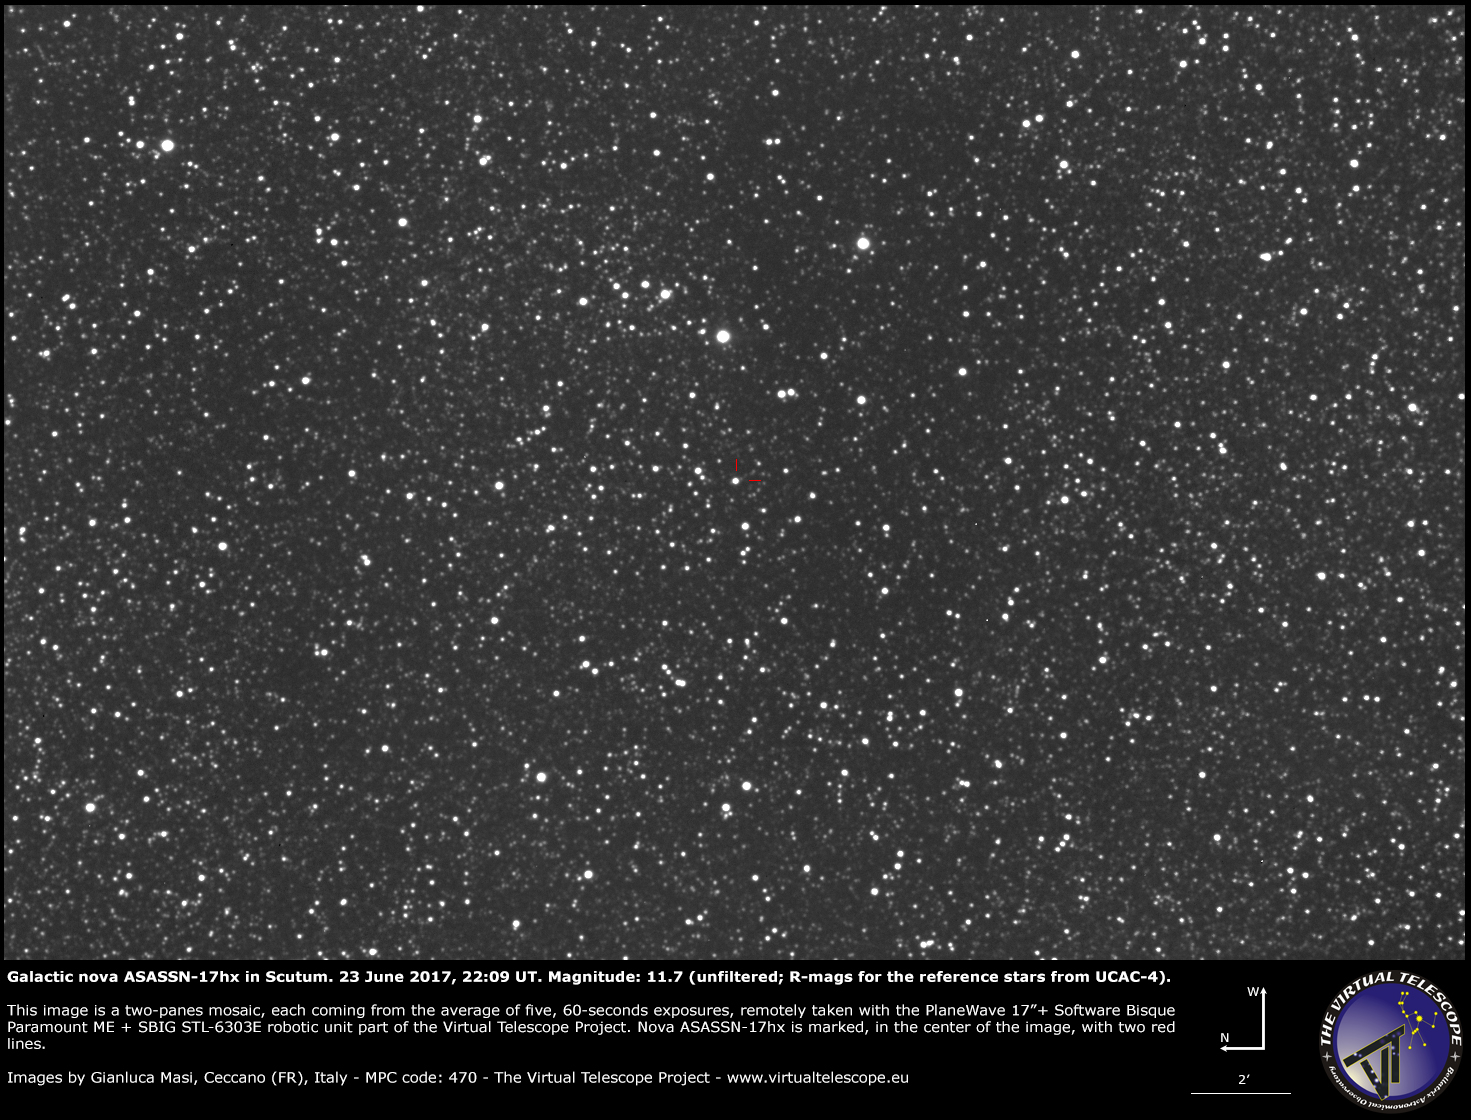 Al momento stai visualizzando ASASSN-17hx, una nuova nova galattica nello Scudo: un’immagine (23 giugno 2017)